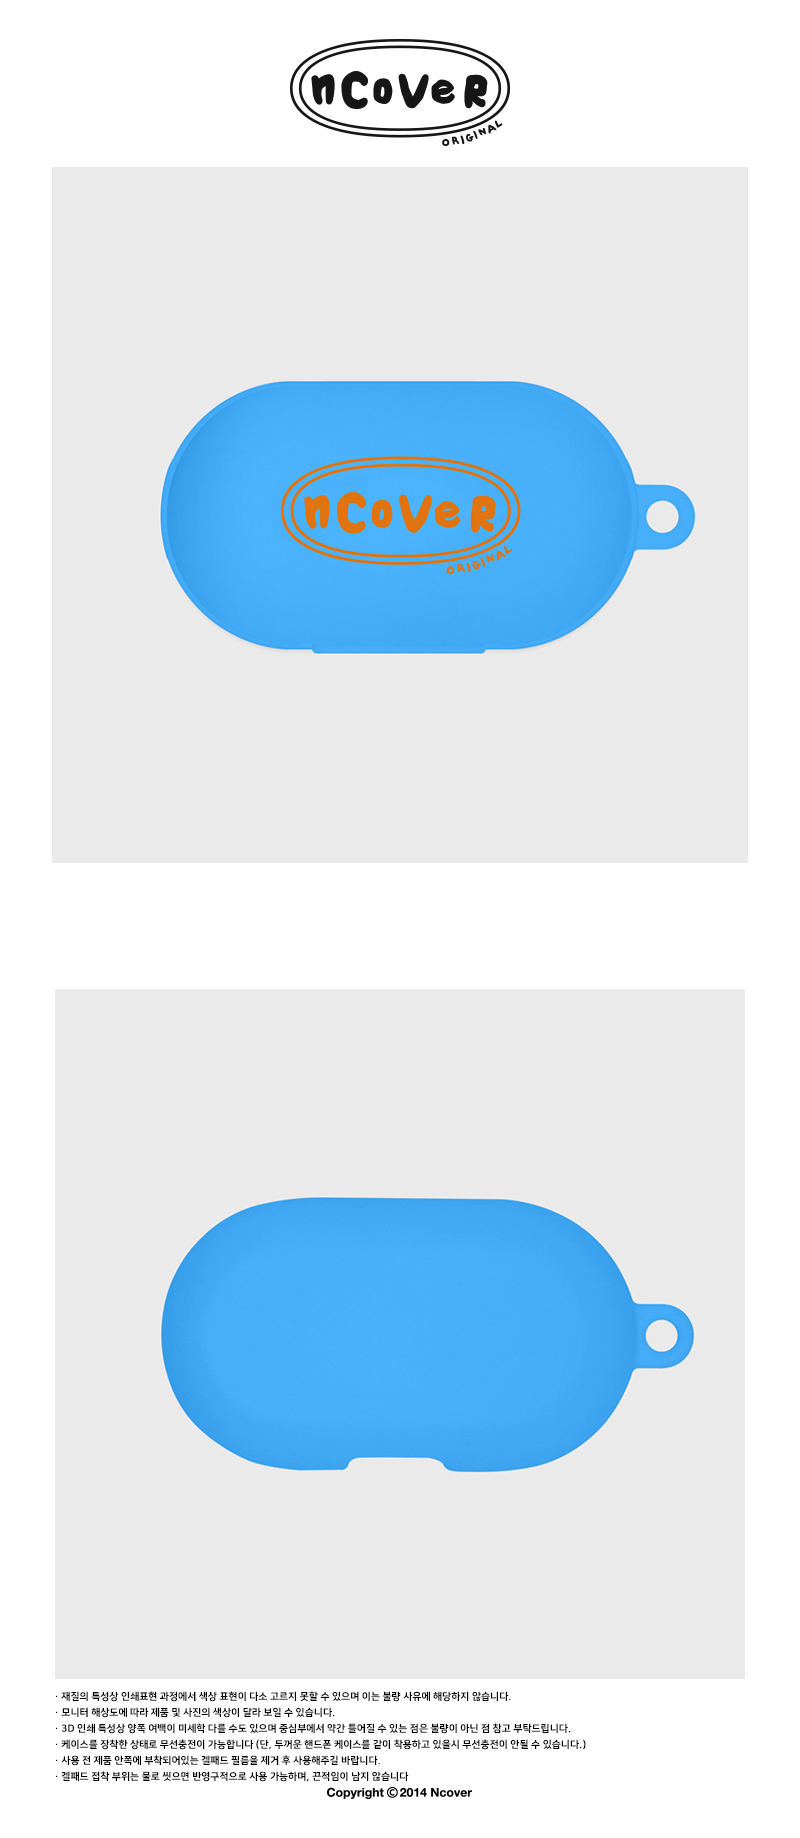  [N]Twentys original case-blue(buds)  19,000원 - 바이인터내셔널주식회사 디지털, 이어폰/헤드폰, 이어폰/헤드폰 액세서리, 에어팟/에어팟프로 케이스 바보사랑  [N]Twentys original case-blue(buds)  19,000원 - 바이인터내셔널주식회사 디지털, 이어폰/헤드폰, 이어폰/헤드폰 액세서리, 에어팟/에어팟프로 케이스 바보사랑